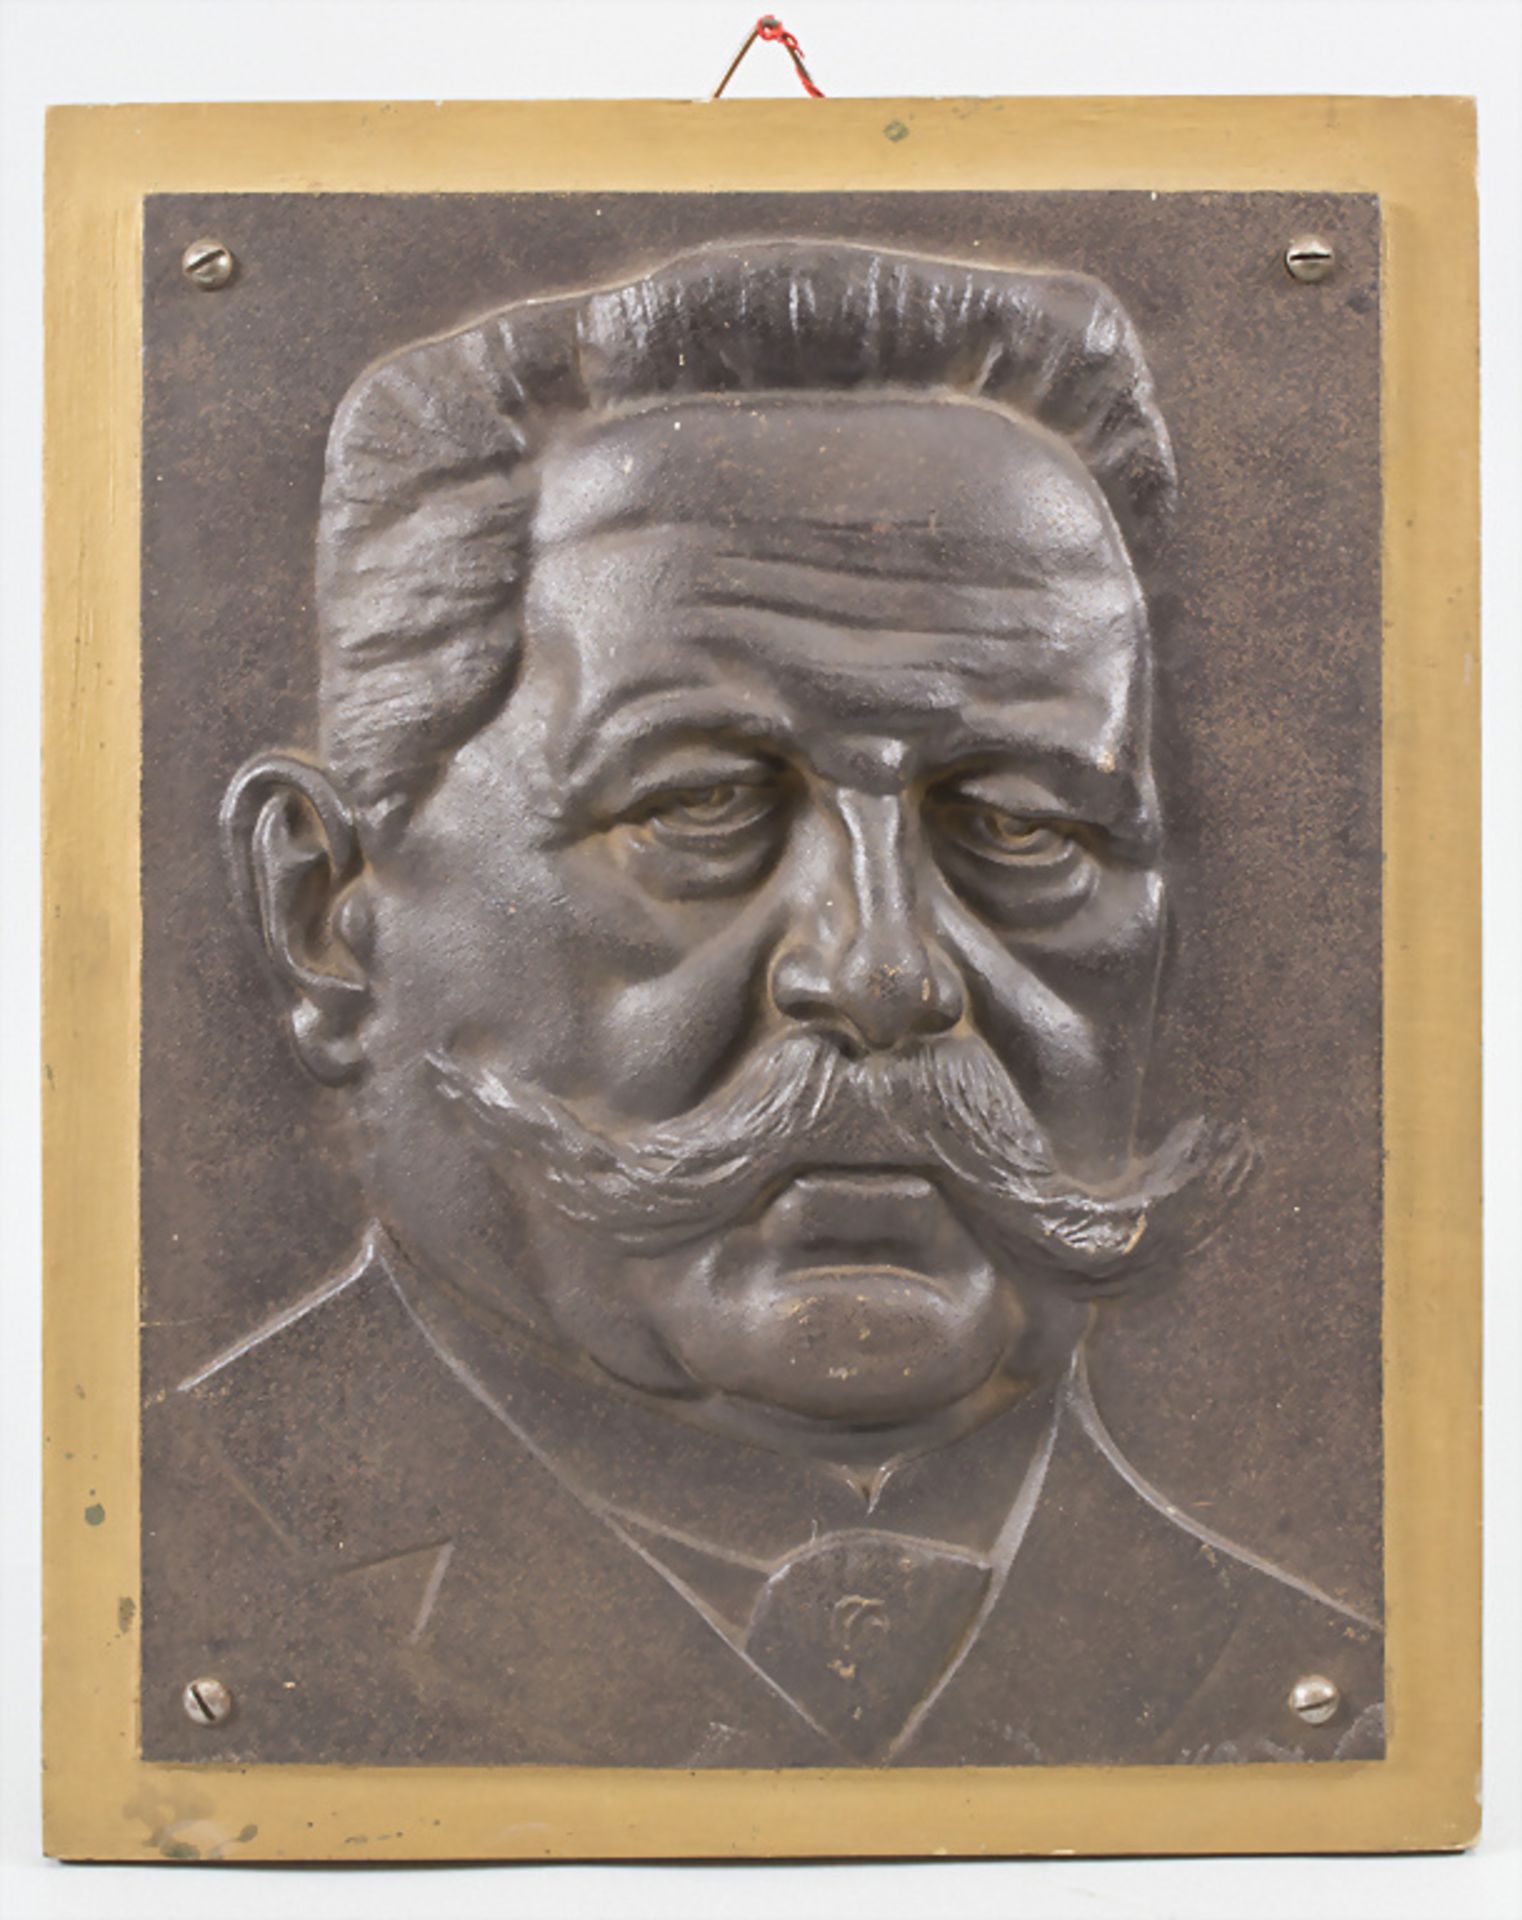 Eisenguss Reliefplatte 'Hindenburg' / A cast iron relief plate 'Hindenburg', um 1930 - Bild 2 aus 4